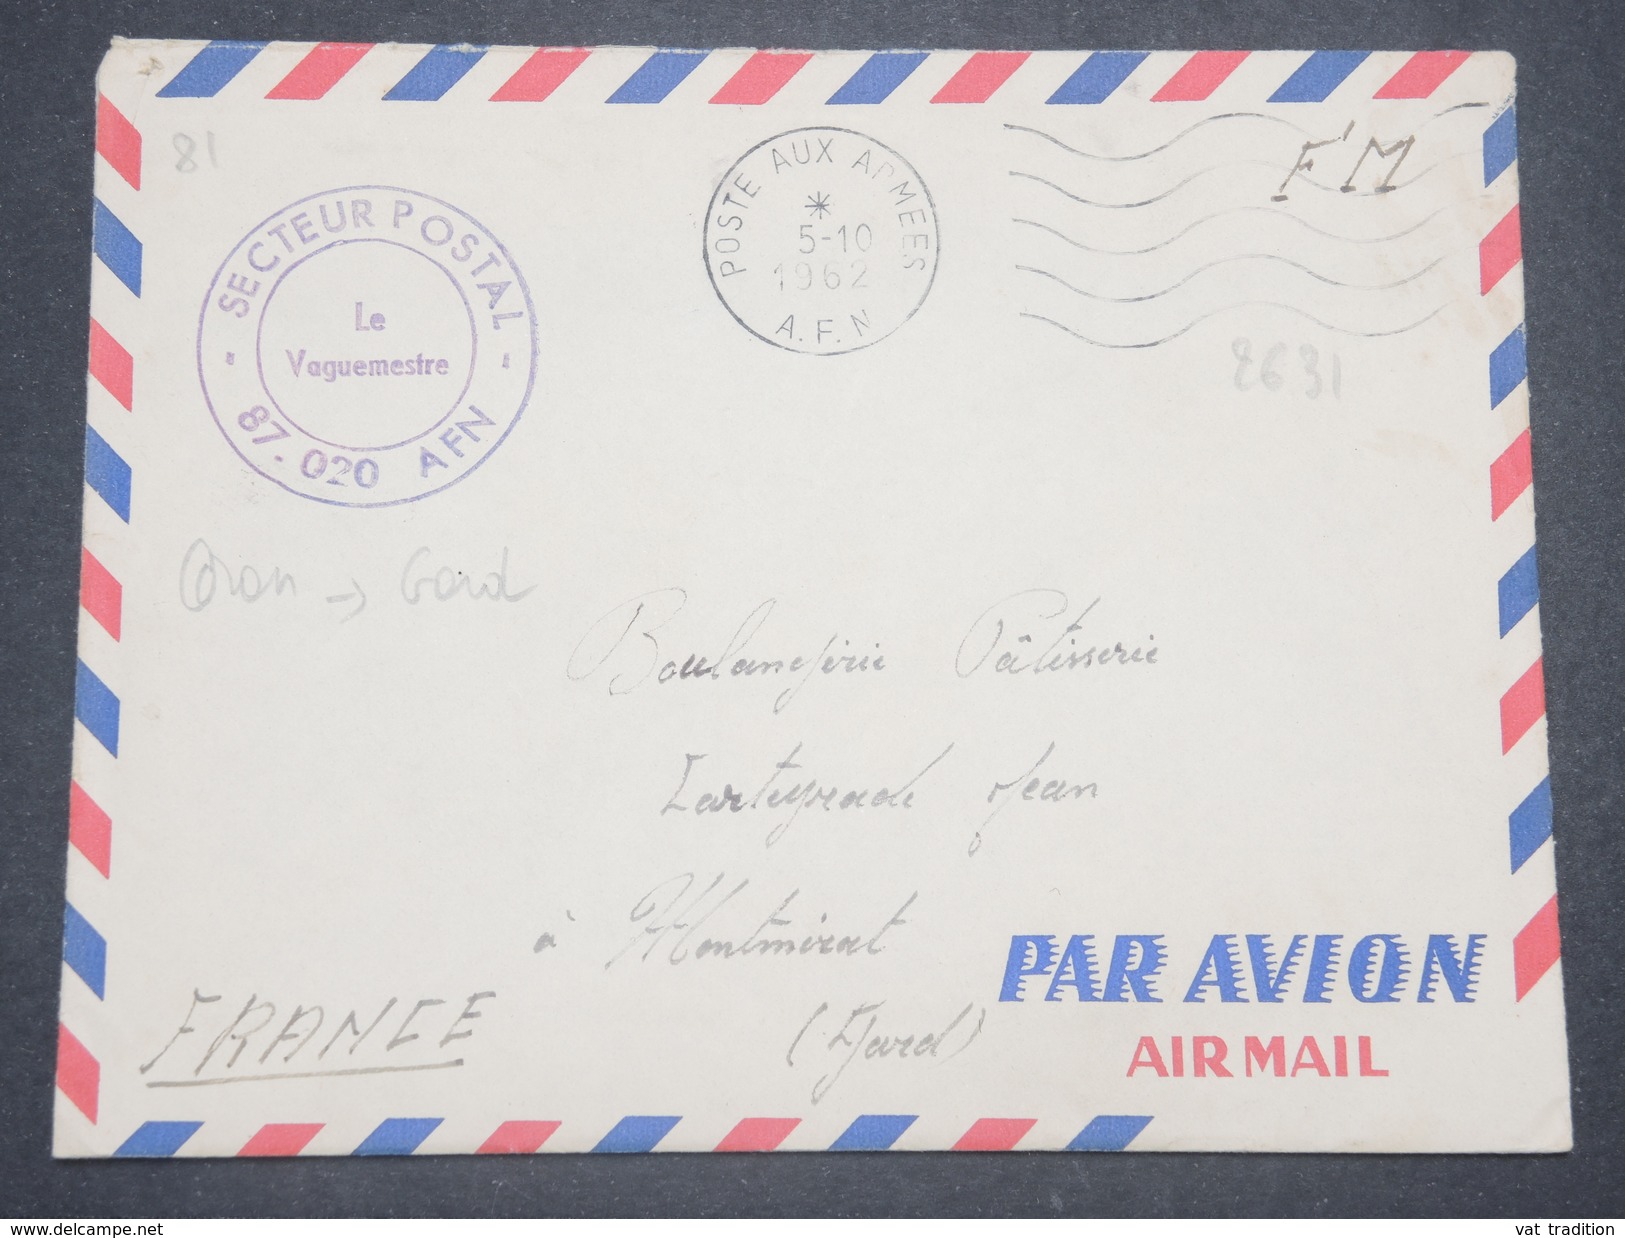 FRANCE - Enveloppe En FM Du Secteur Postal 87 020 Pour Montmirat En 1962 - L 8802 - Guerra D'Algeria